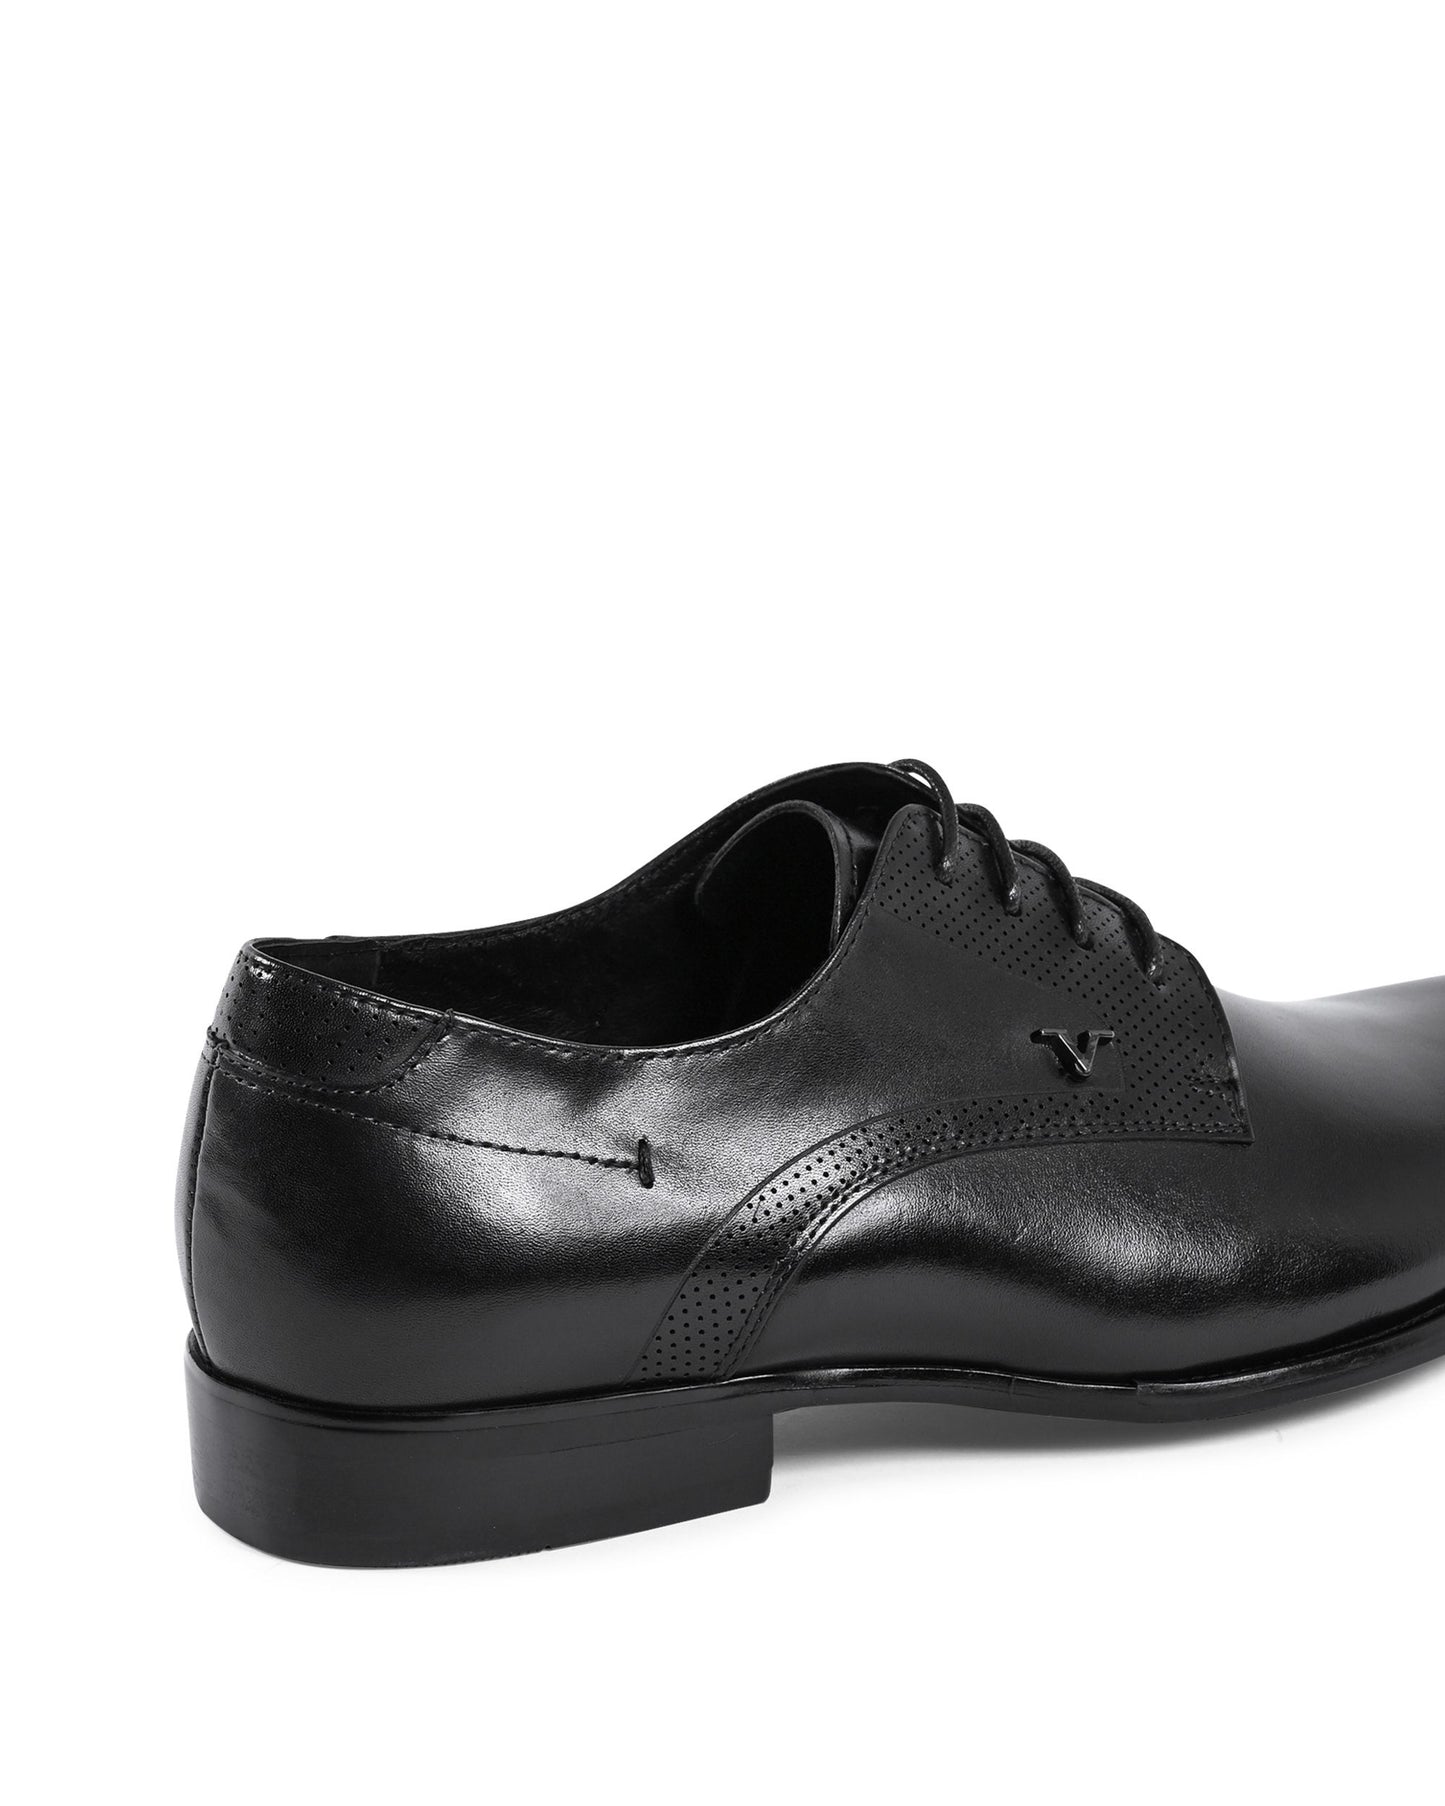 19V69 Italia Mens Classic Shoes Black YO X9005-1 BLACK